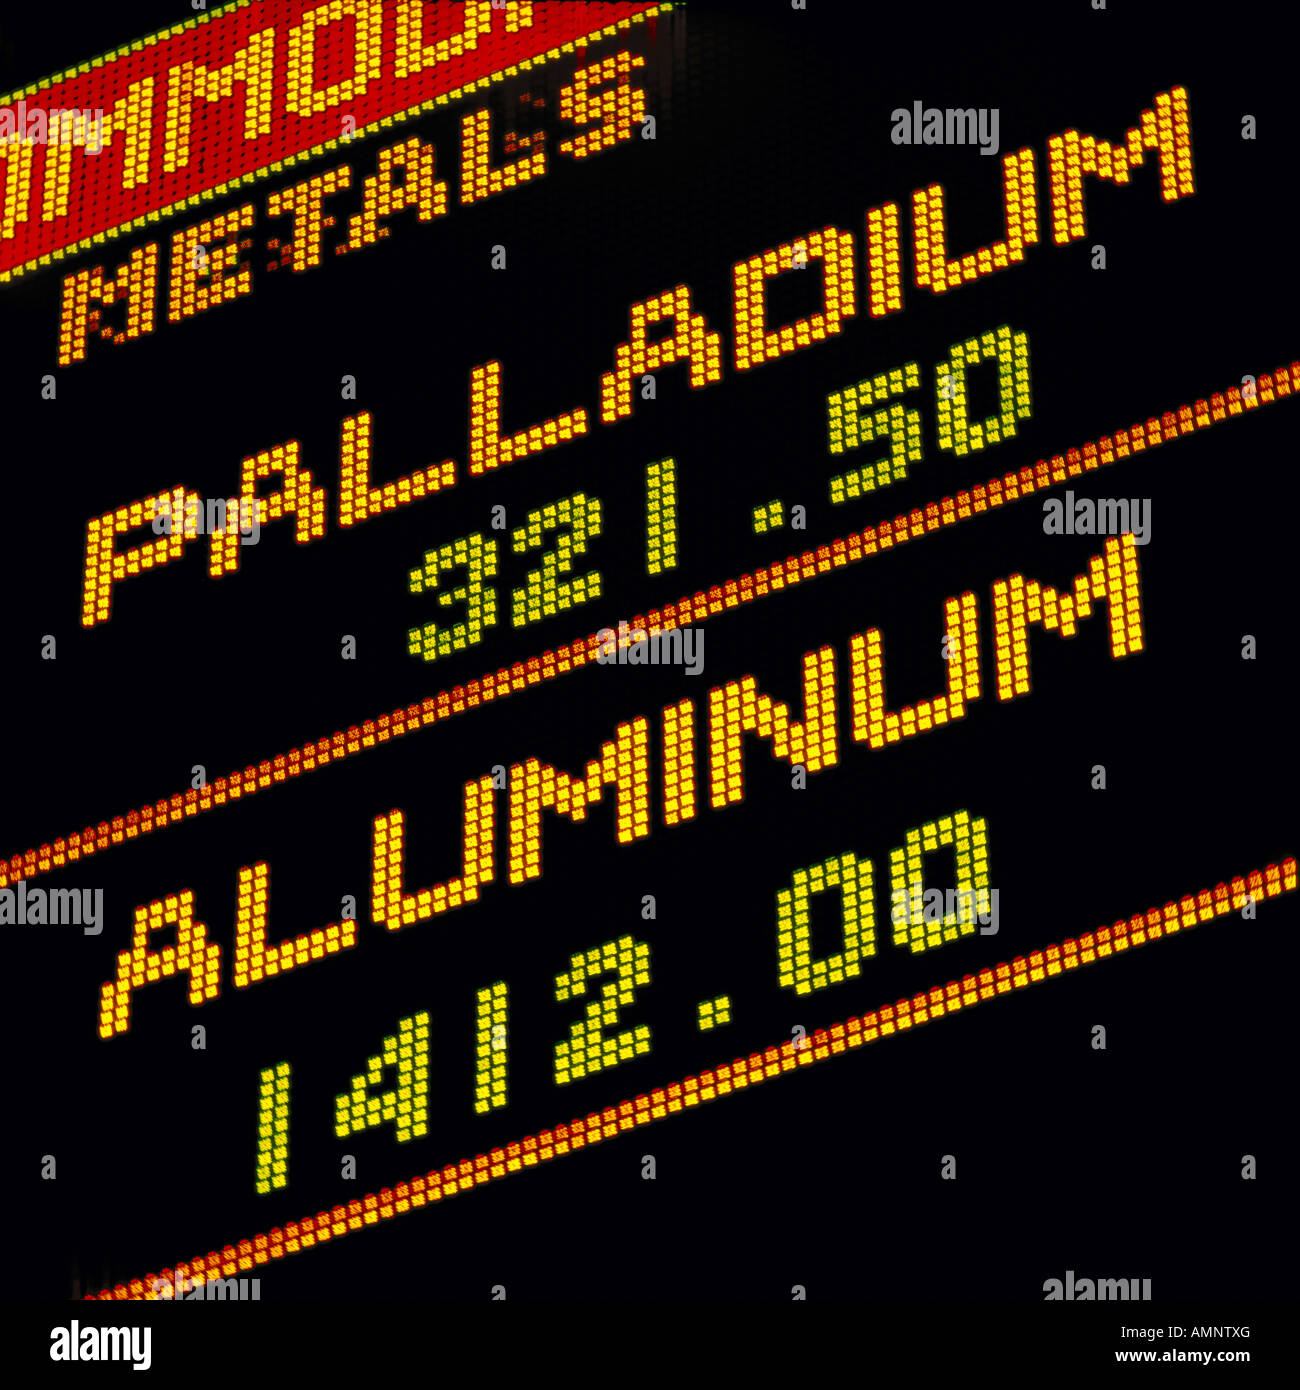 stock indices palladium and aluminum Stock Photo